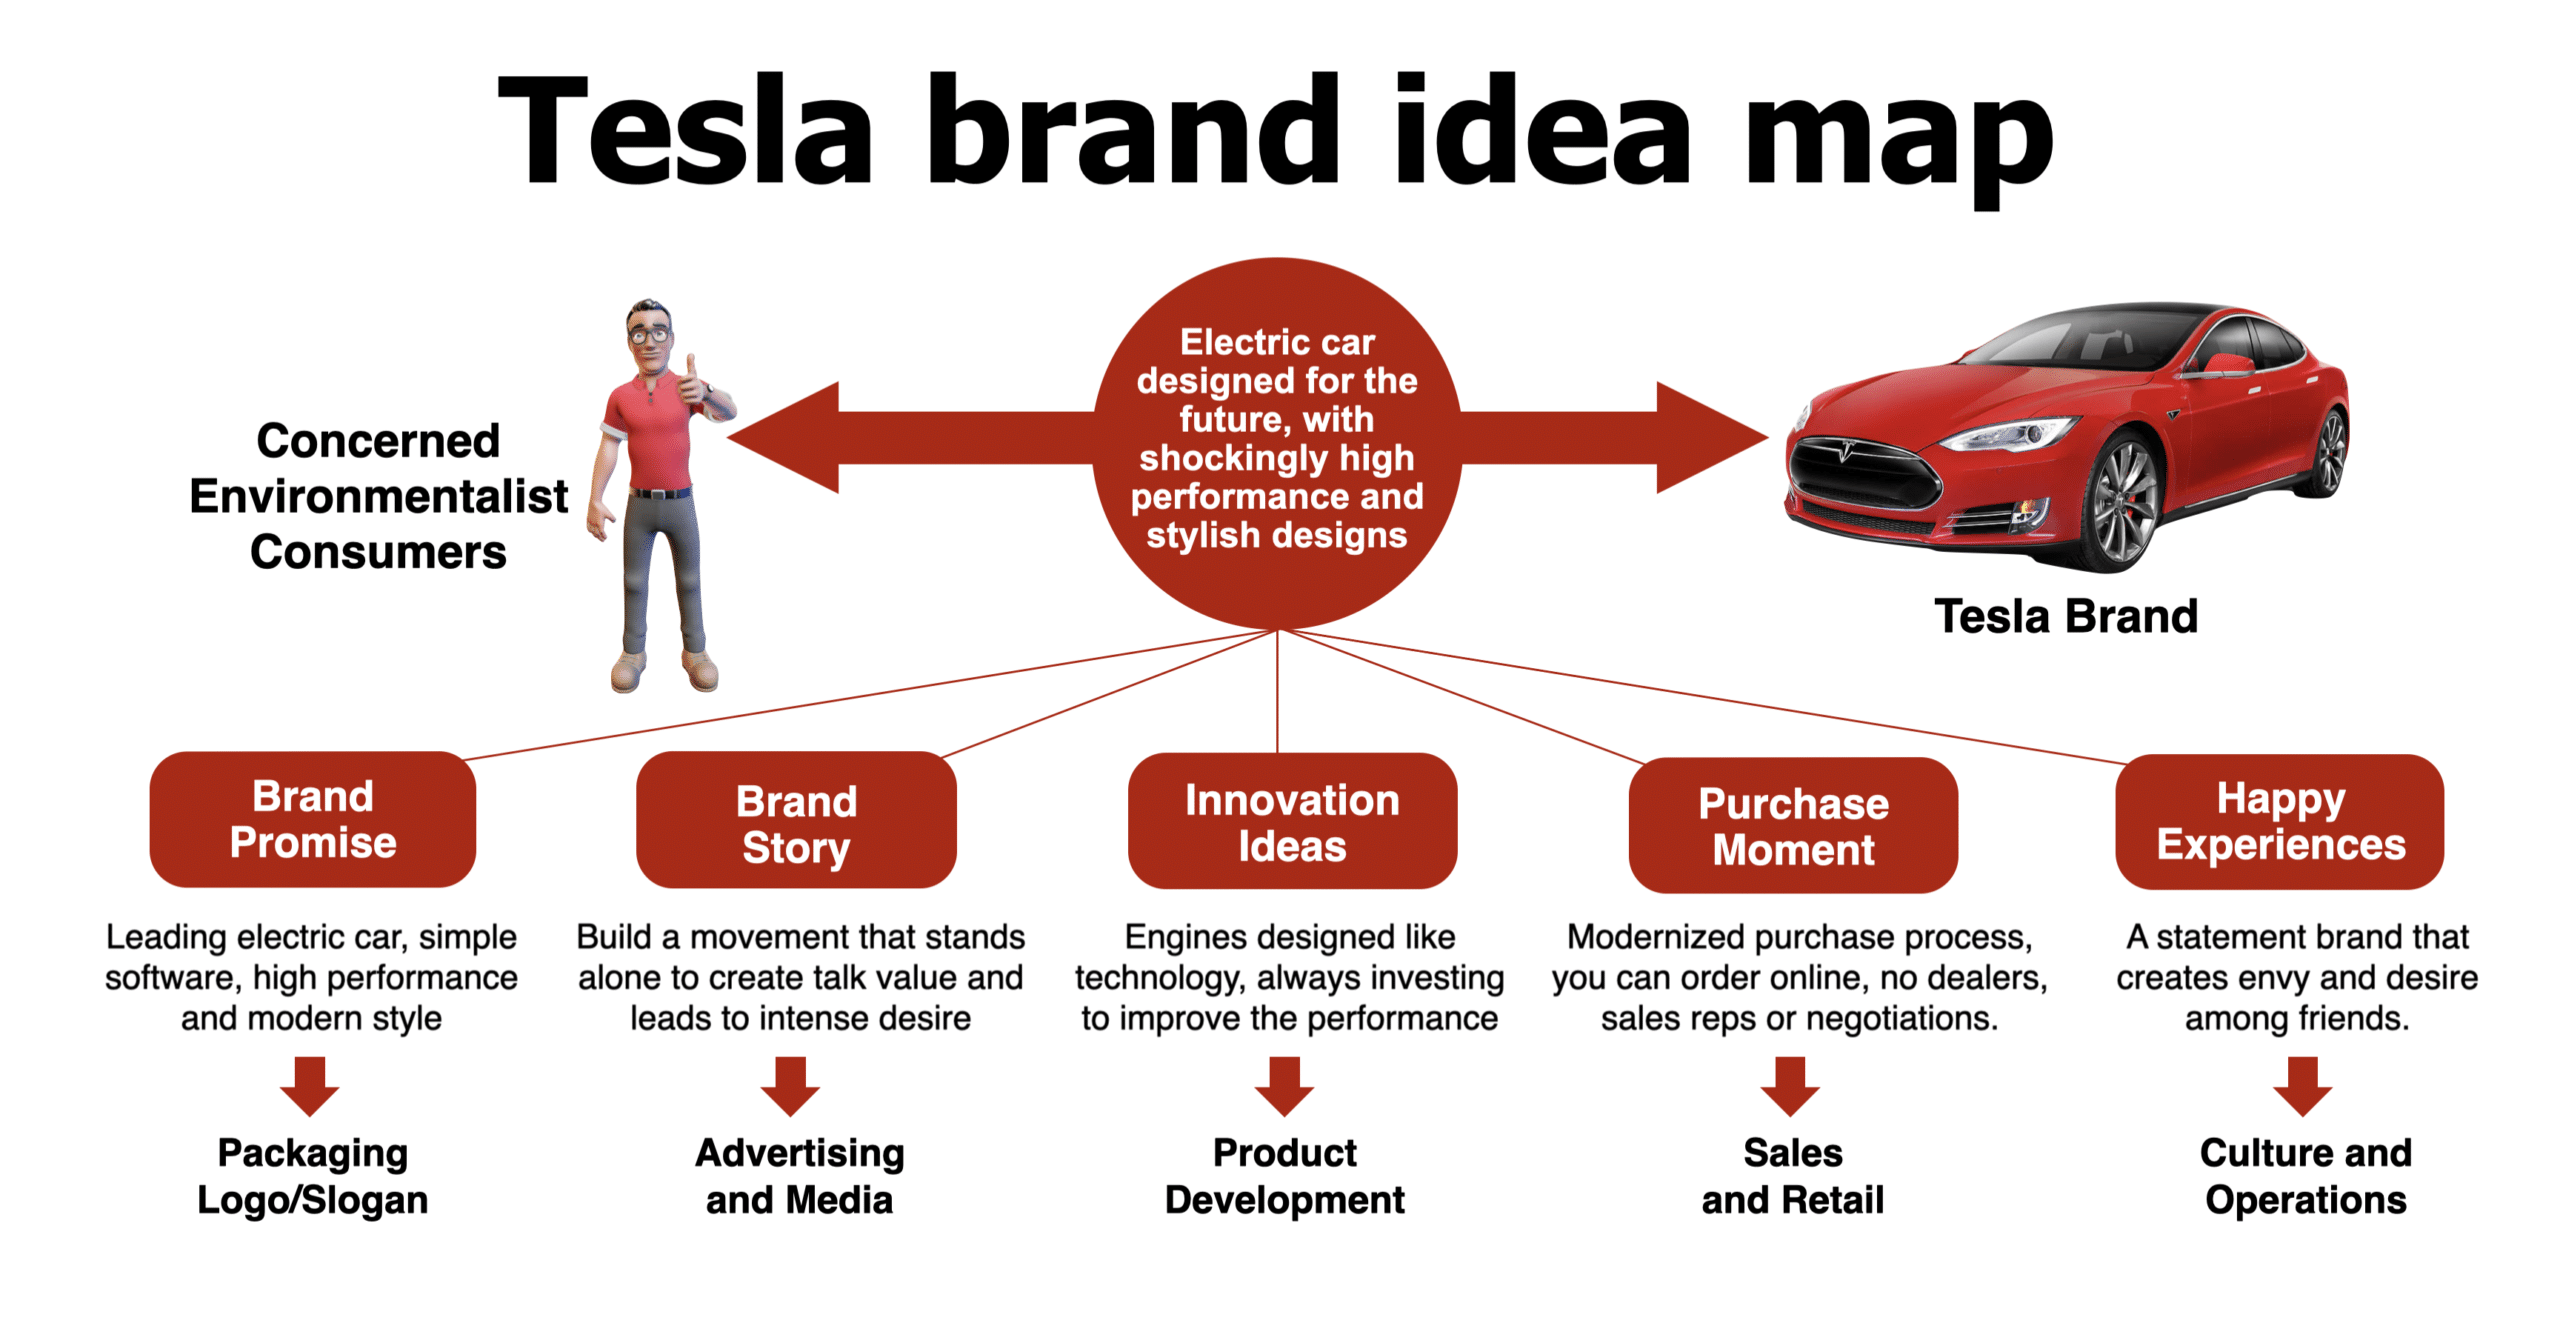 Tesla Brand Idea Map via Elon Musk